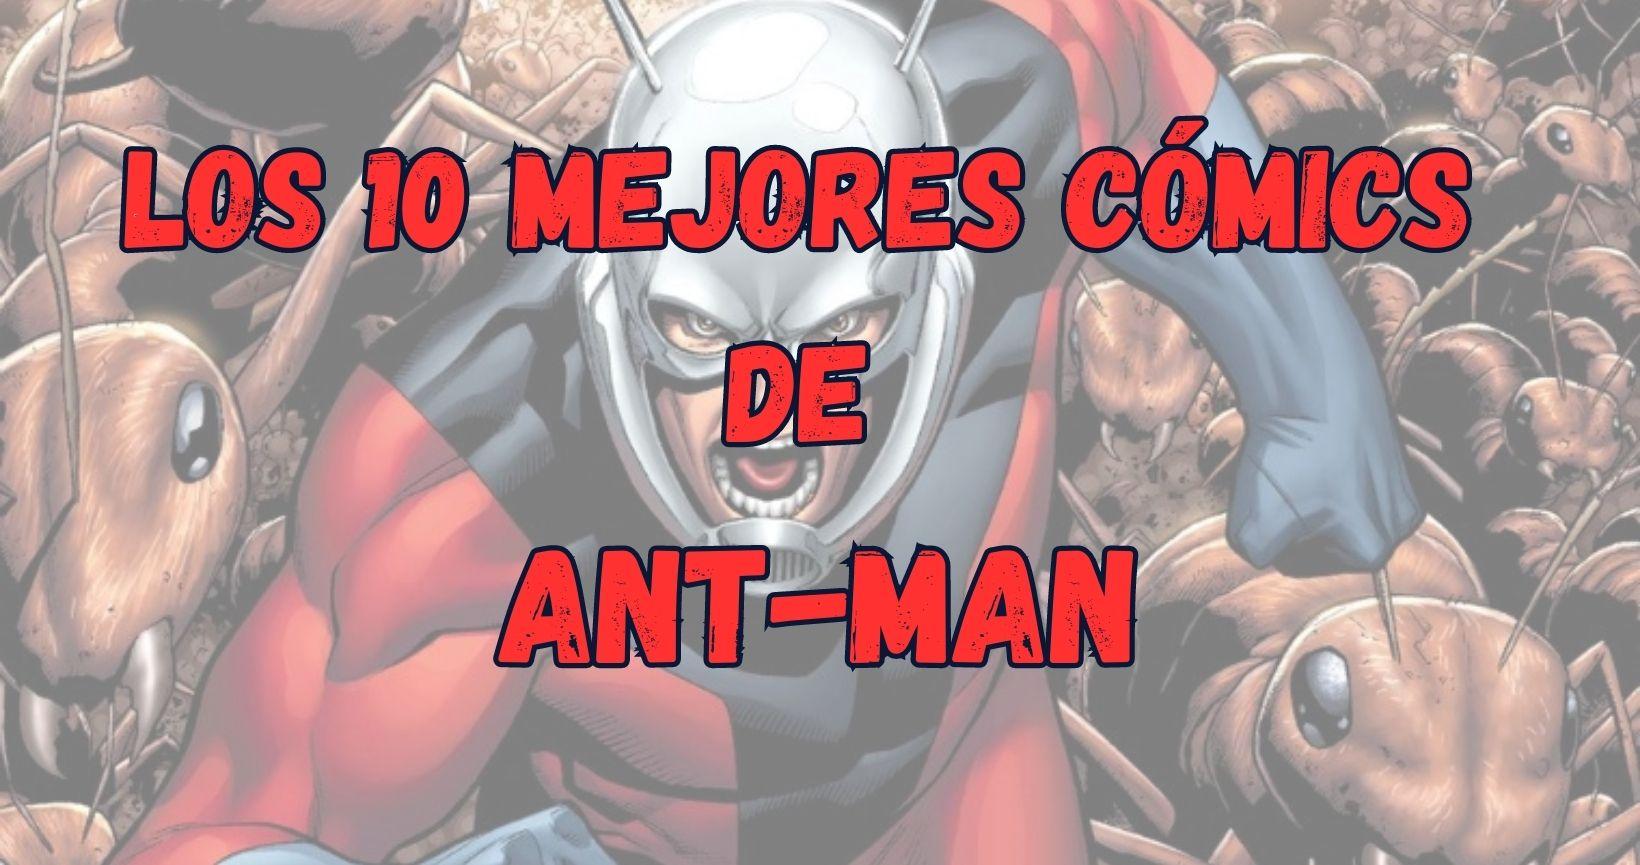 Los 10 mejores cómics de Ant-Man (Hombre Hormiga)